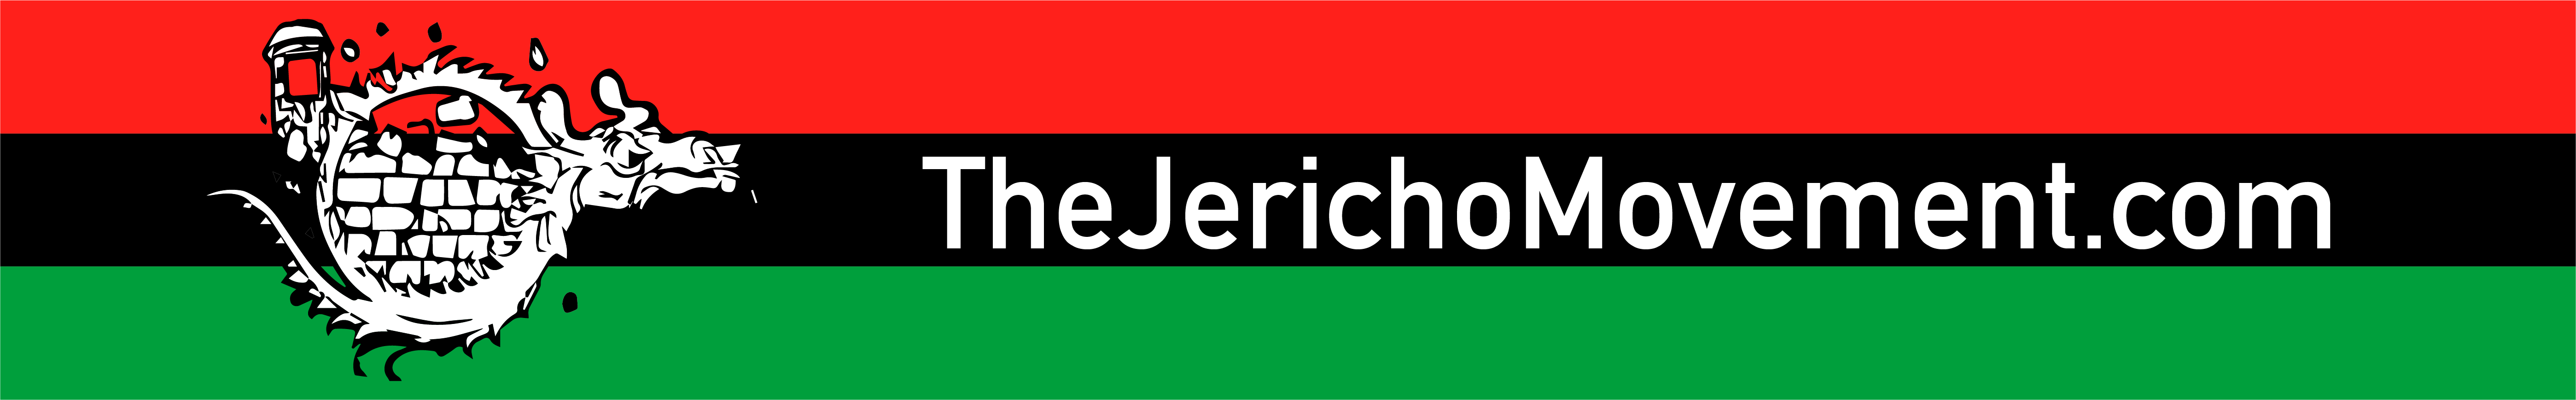 Jericho Movement